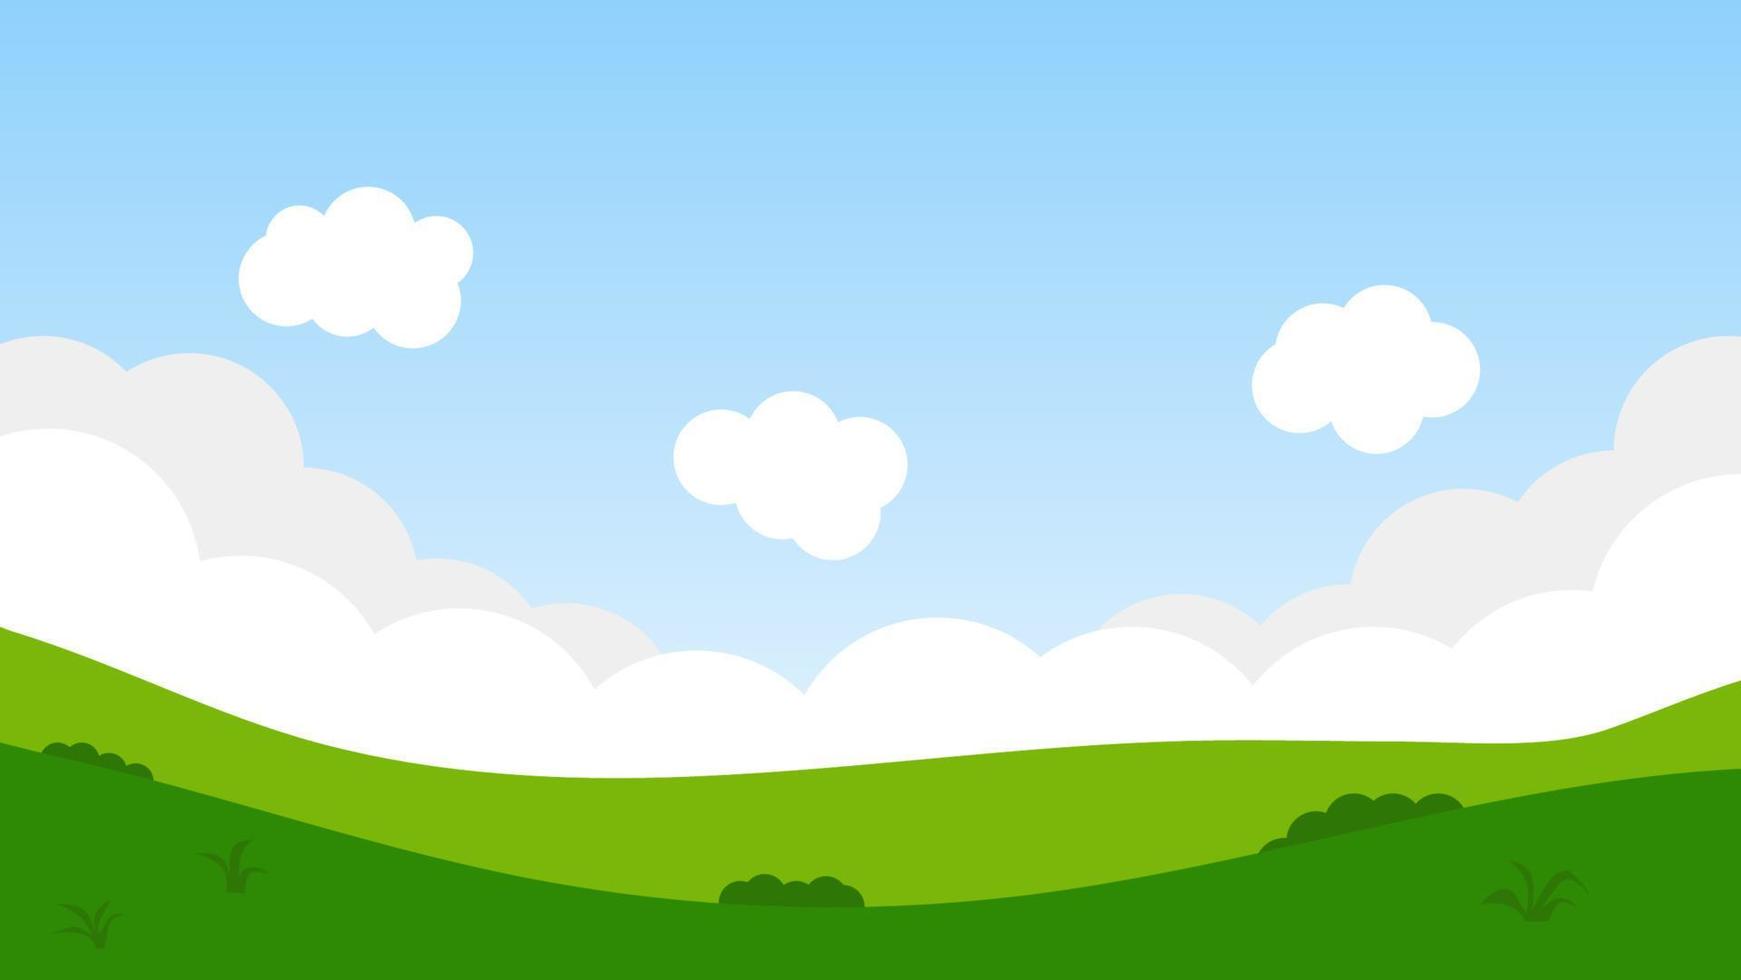 escena de dibujos animados de paisaje con árboles verdes en las colinas y  nubes blancas esponjosas en el fondo del cielo azul de verano 10617206  Vector en Vecteezy